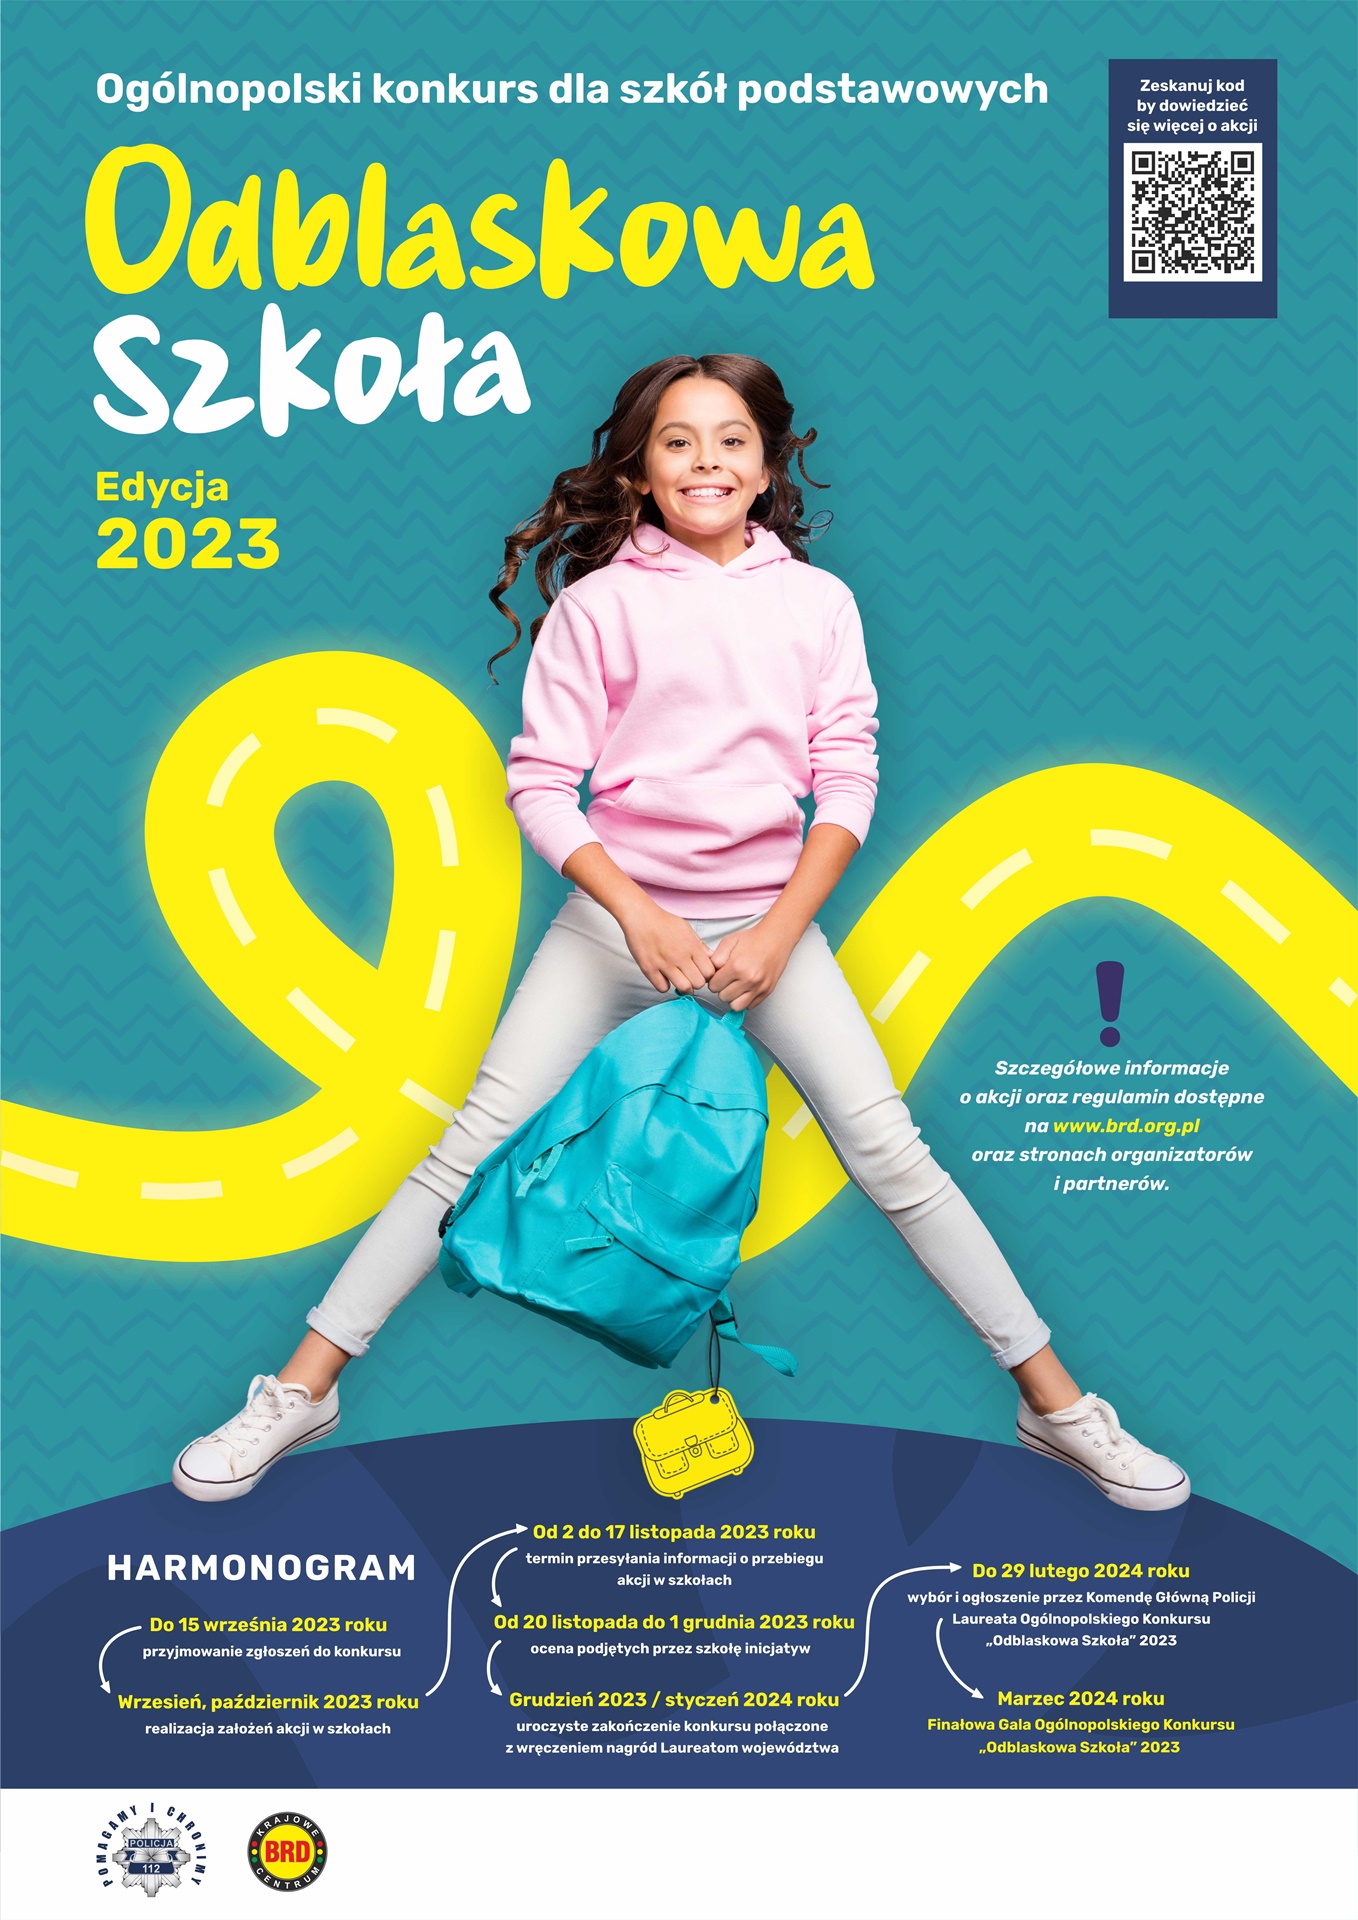 Plakat Odblaskowa Szkoła 2023 - uśmiechnięta dziewczynka trzyma w ręce plecak. W tle kręta droga. Poniżej przedstawiony jest harmonogram konkursu oraz adres strony www.brd.org.pl